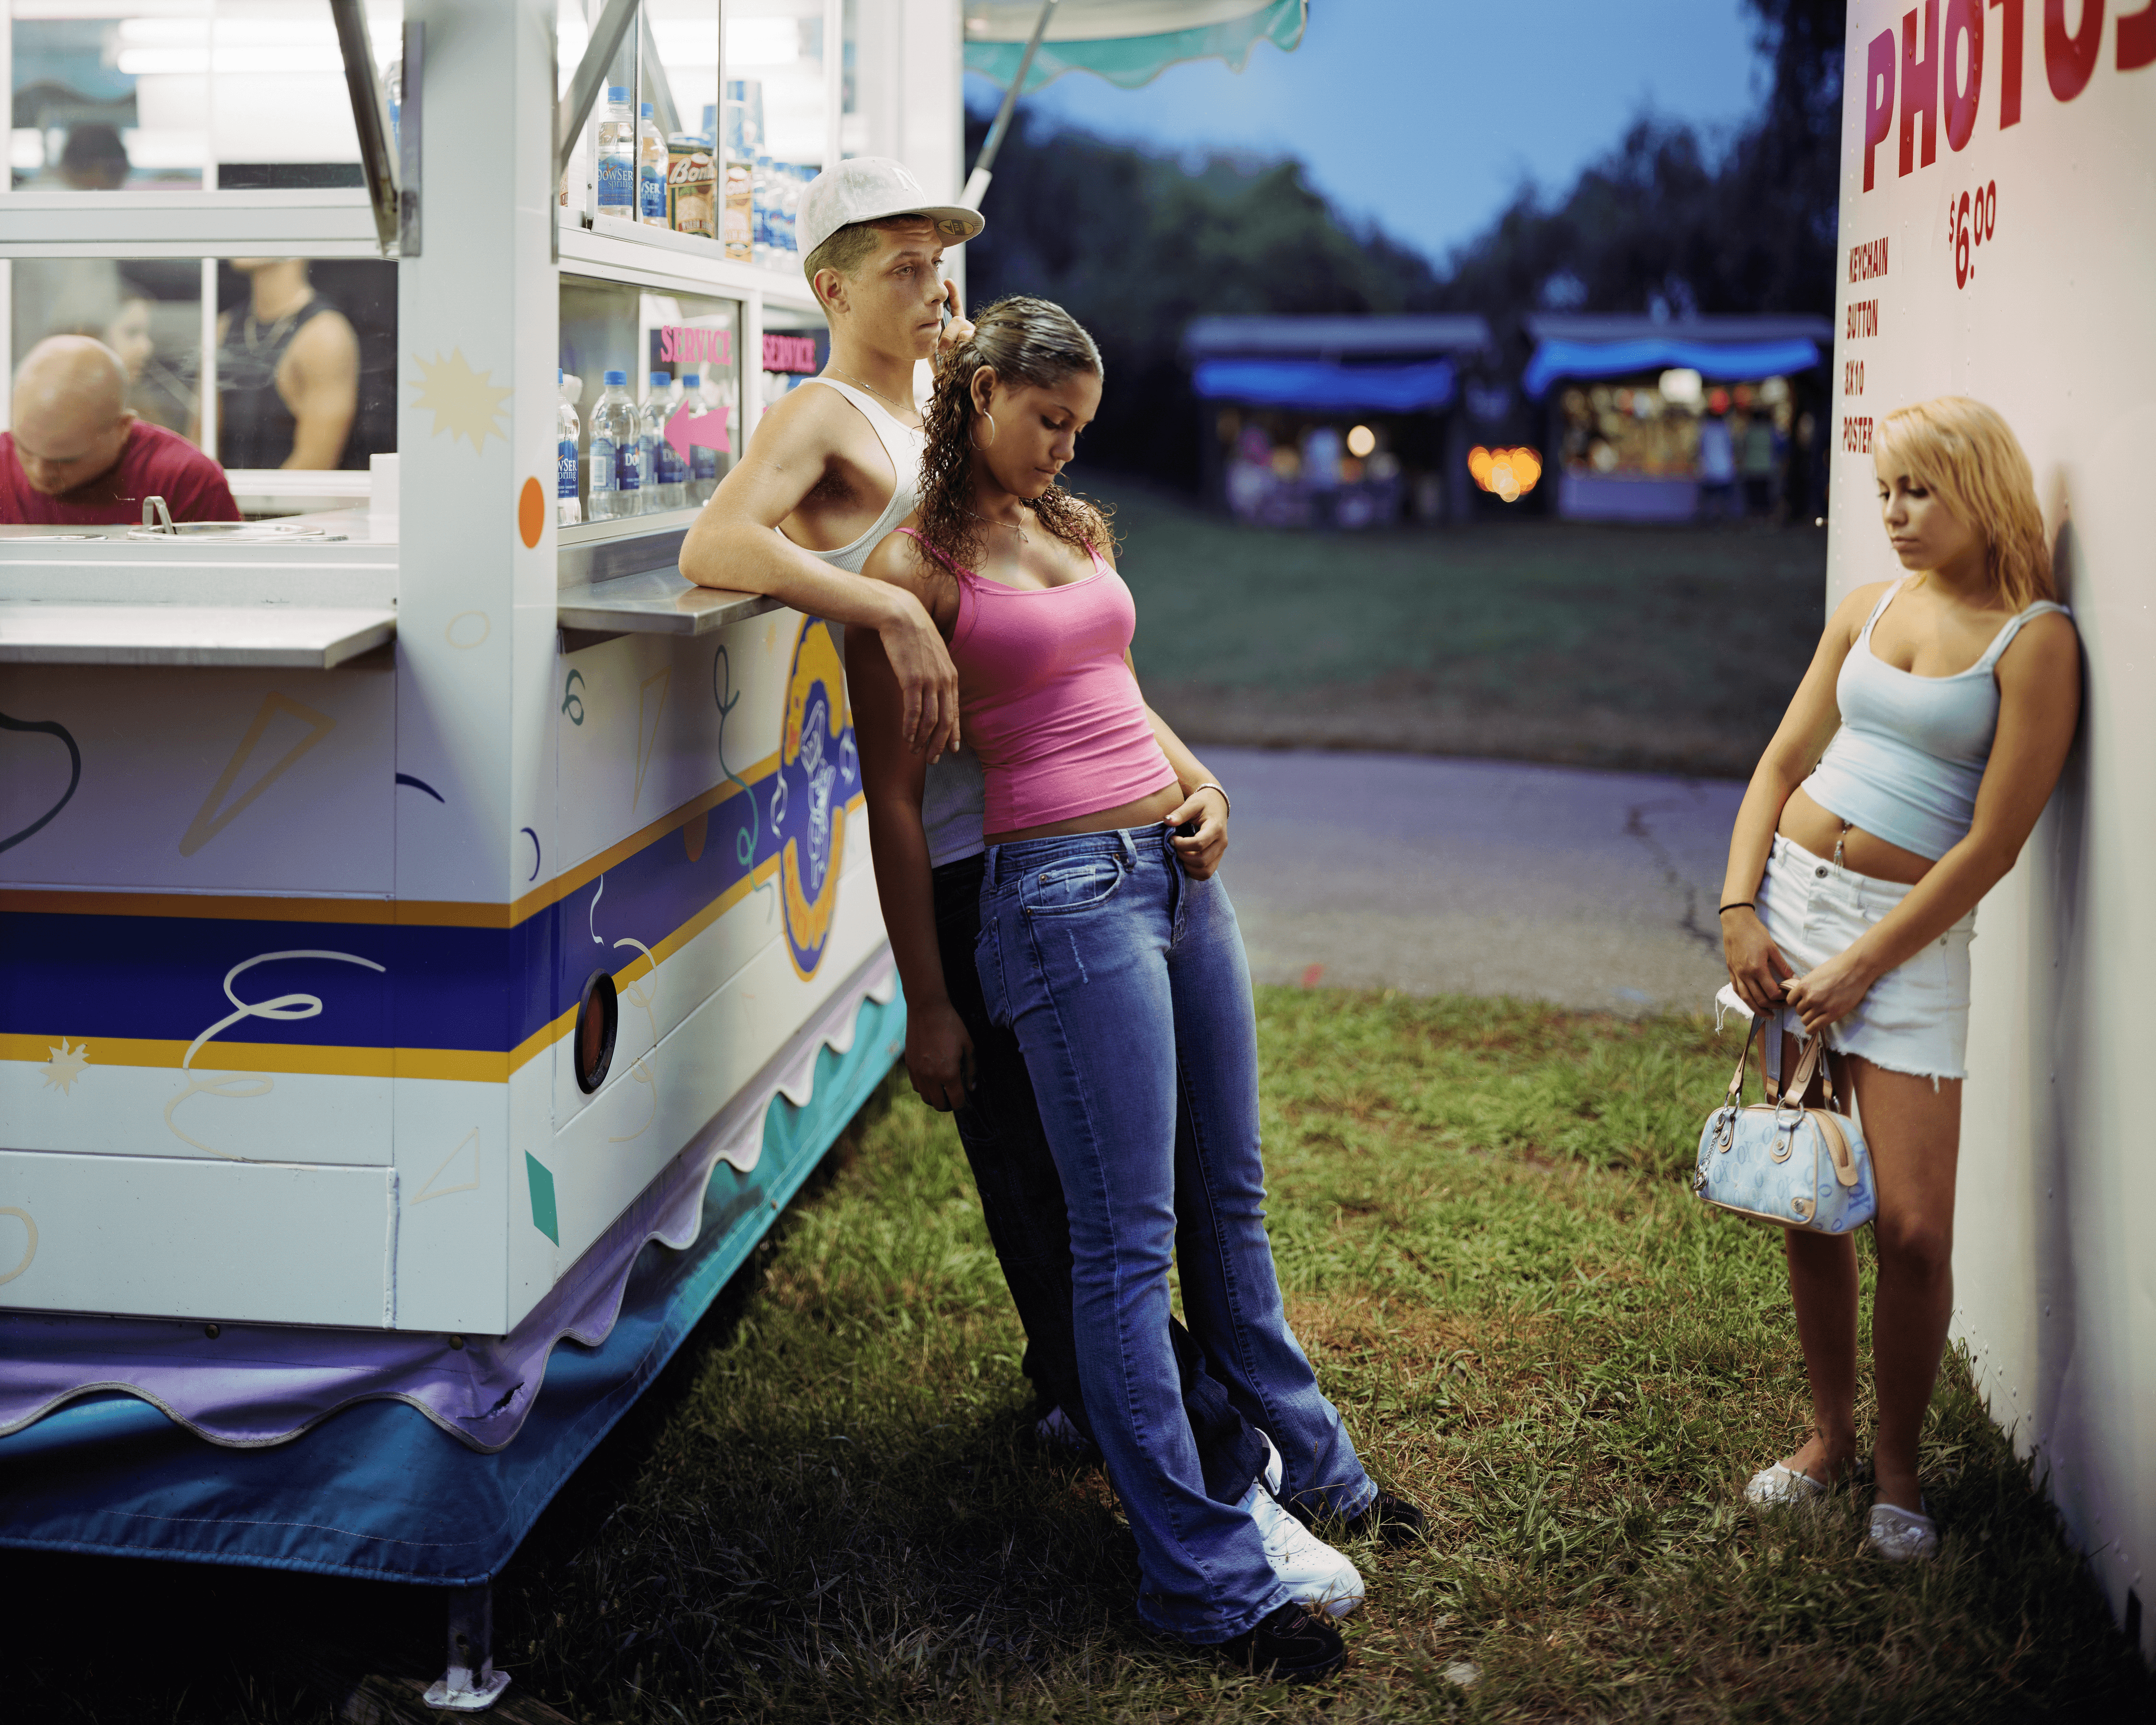 County Fair - Orange County Fair 3, NY, 2006